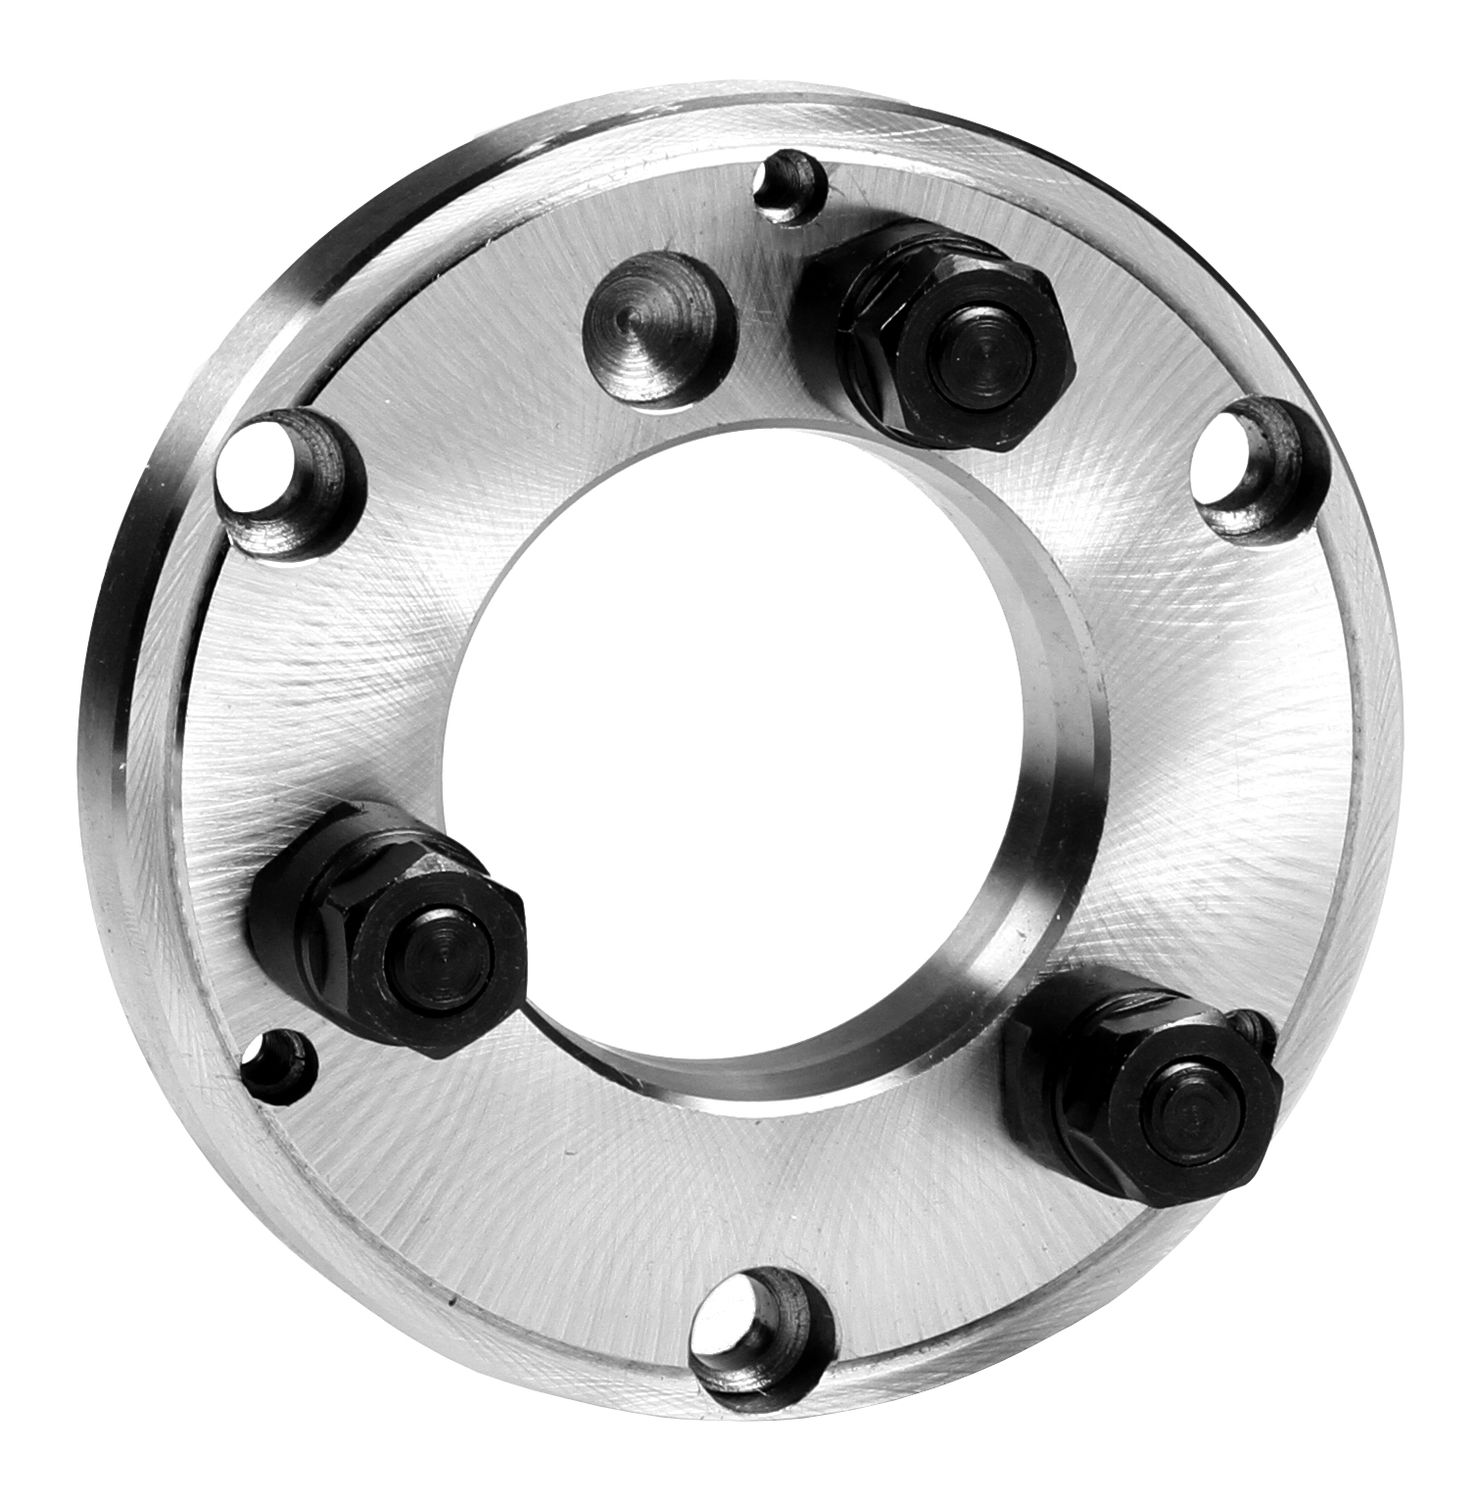 Flansch für Drehfutter Ø 160 mm mit radialer Feineinstellung - DIN 55027-3